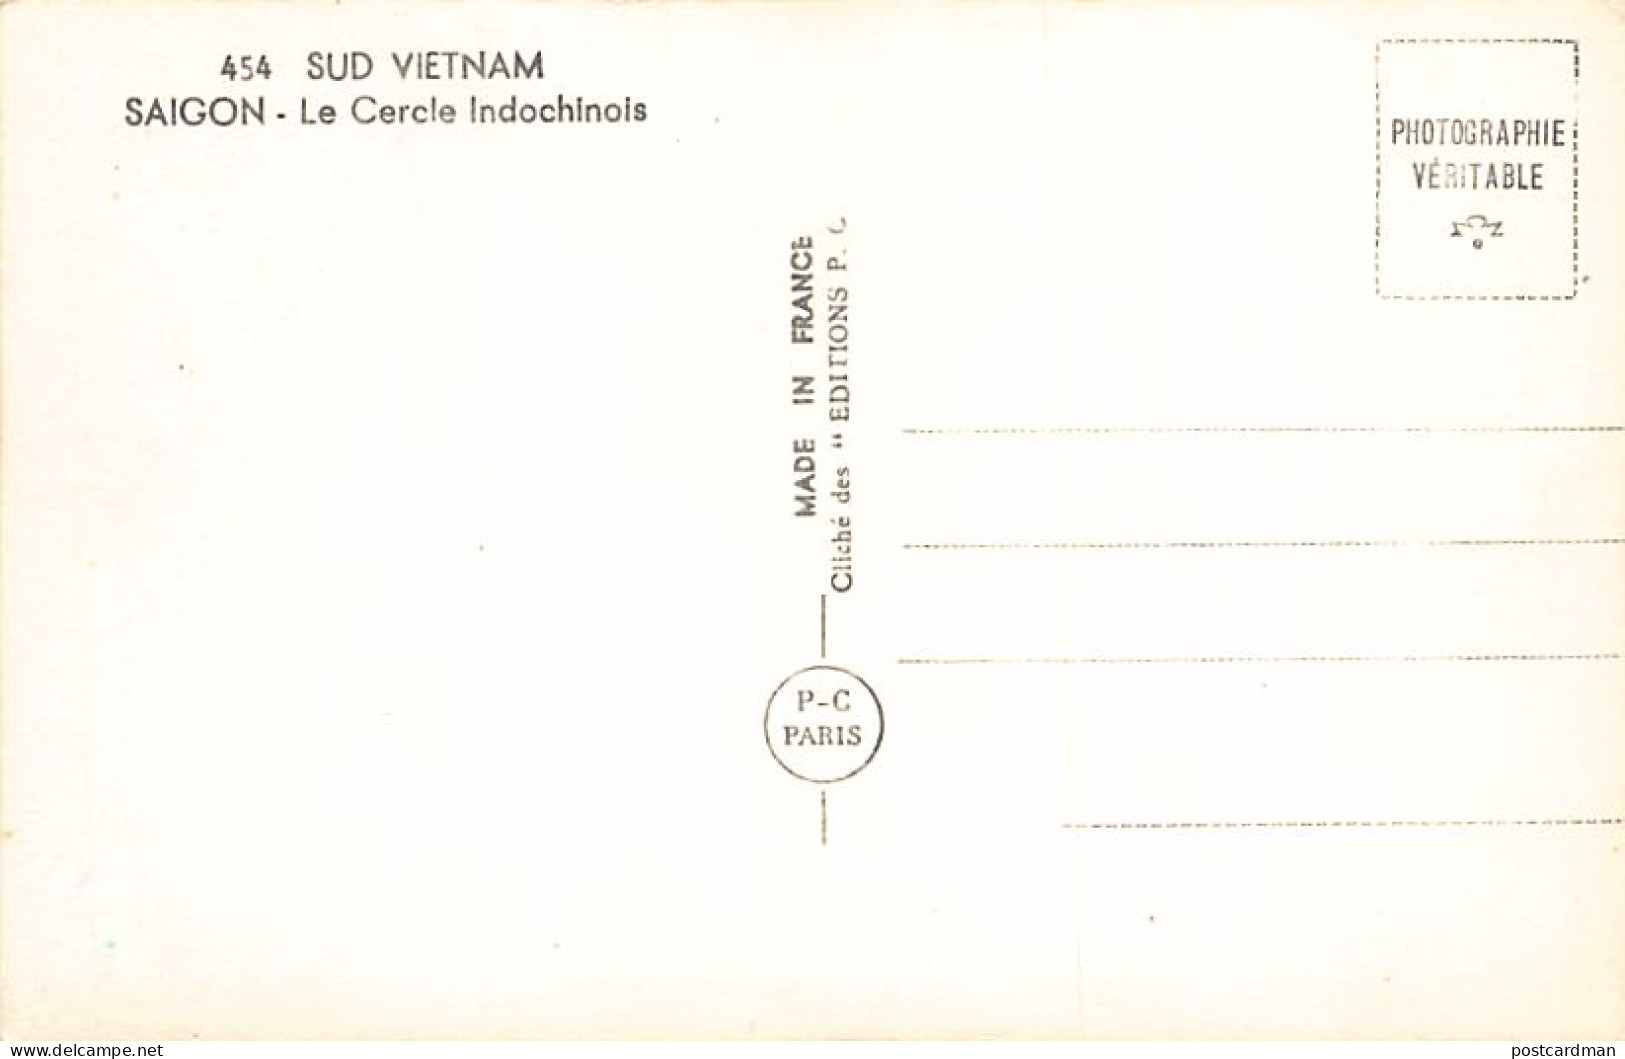 Vietnam - SAIGON - Le Cercle Indochinois - Ed. P-C Paris 454 - Vietnam